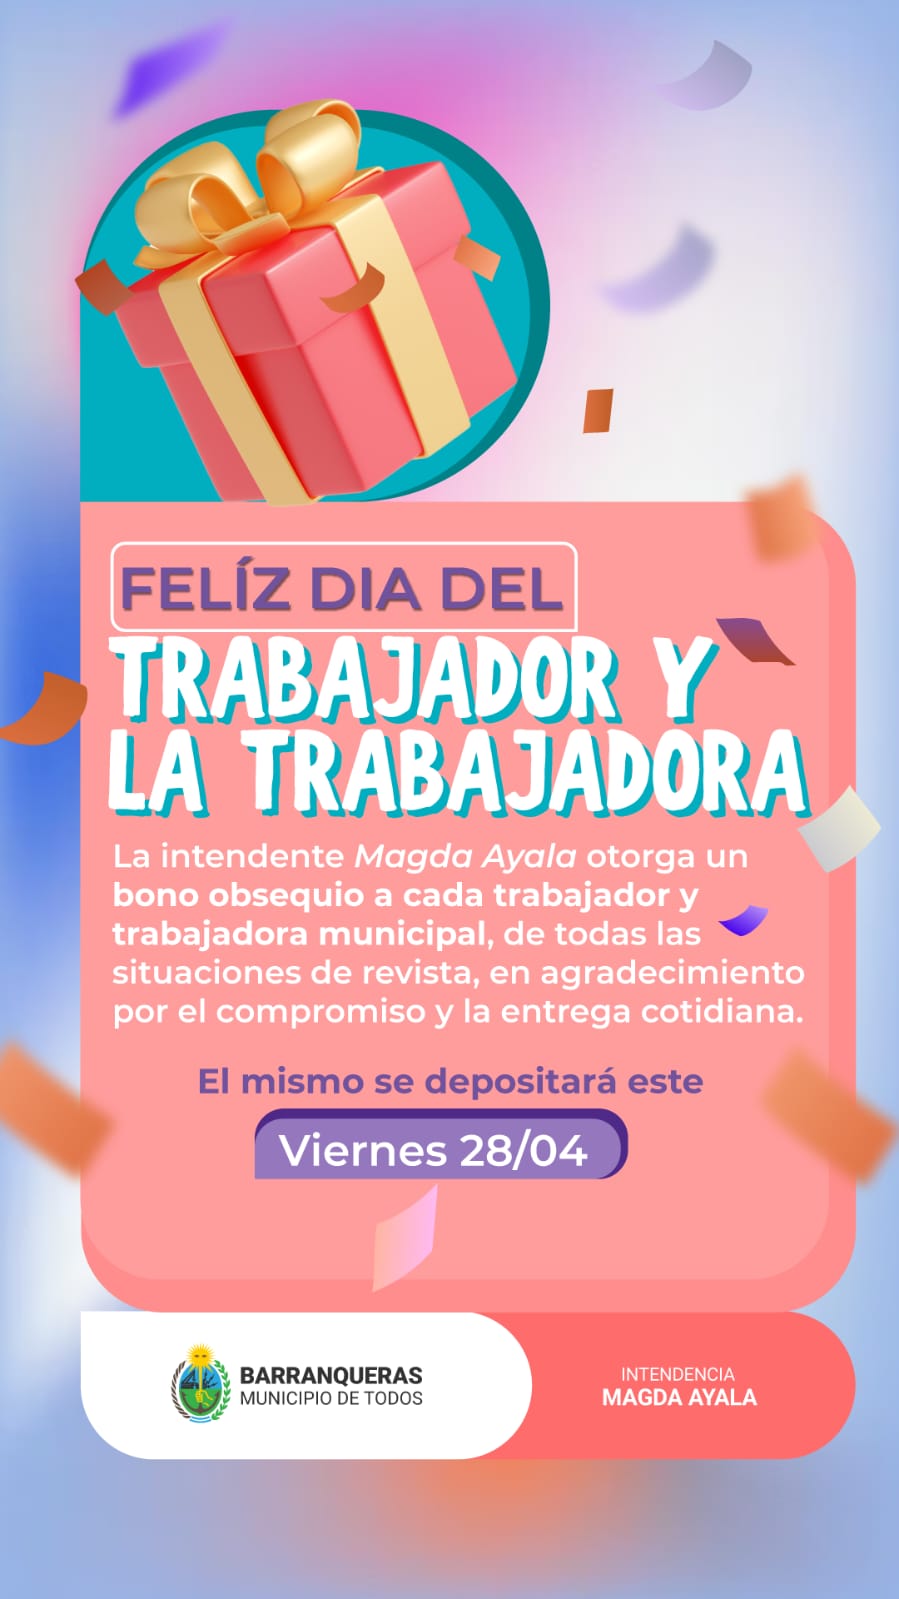 Barranqueras: Habrá un bono especial para empleados municipales por el Día del Trabajador; el mismo se depositará hoy viernes 28 